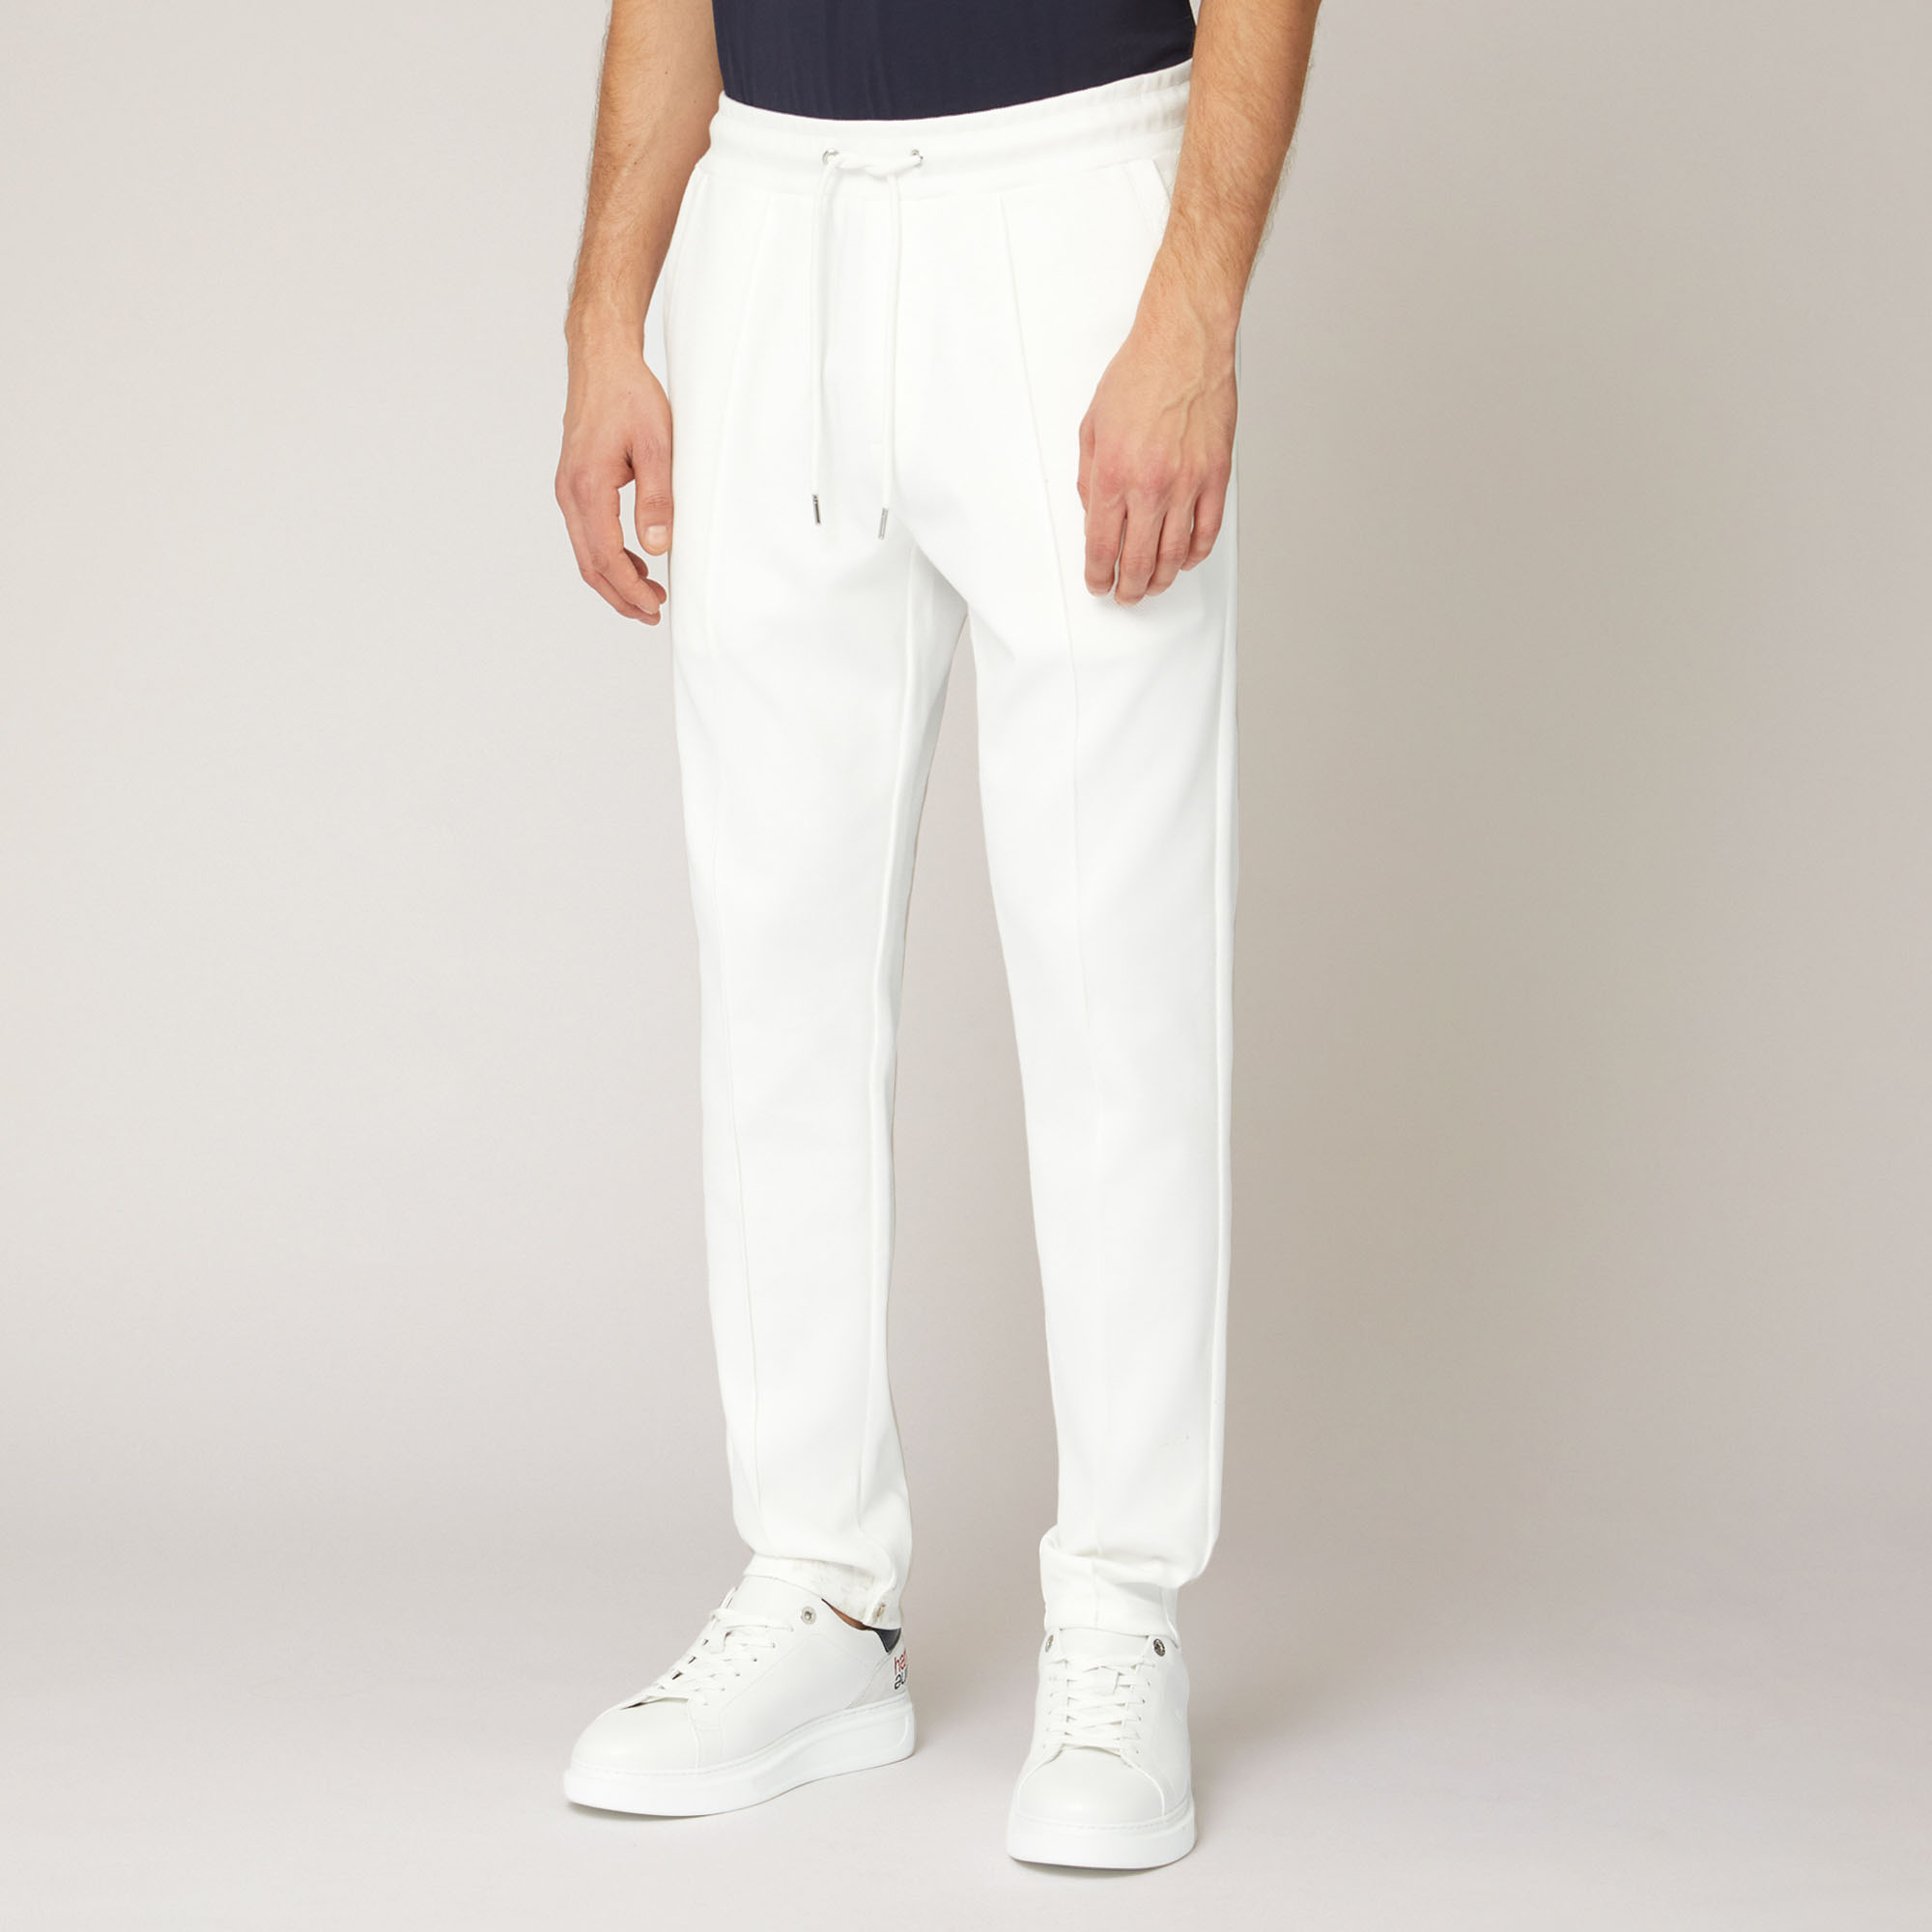 Hose aus Stretch-Baumwolle mit Tasche hinten, Weiß, large image number 0